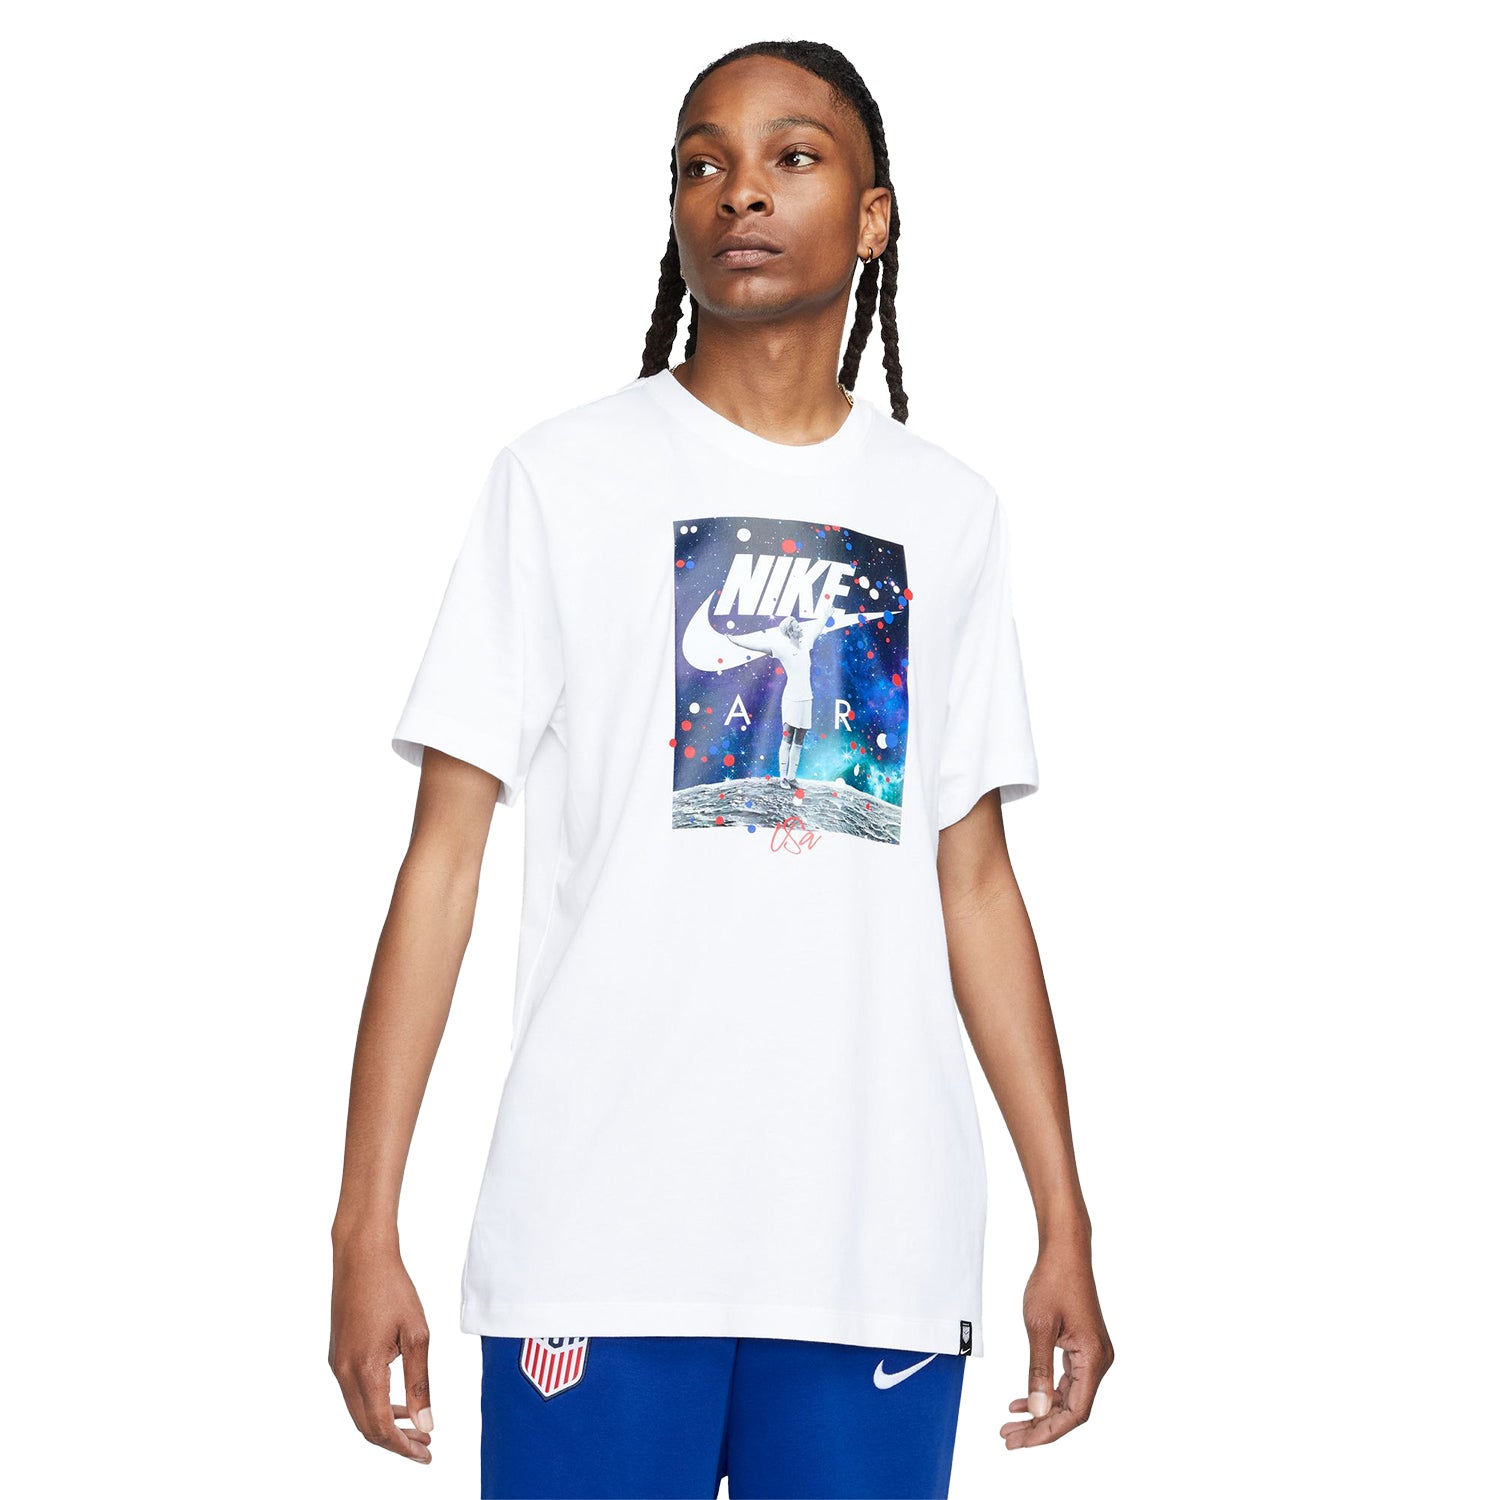 Men's Nike WNT Rapinoe Photo White Tee - Official U.S. Soccer Store